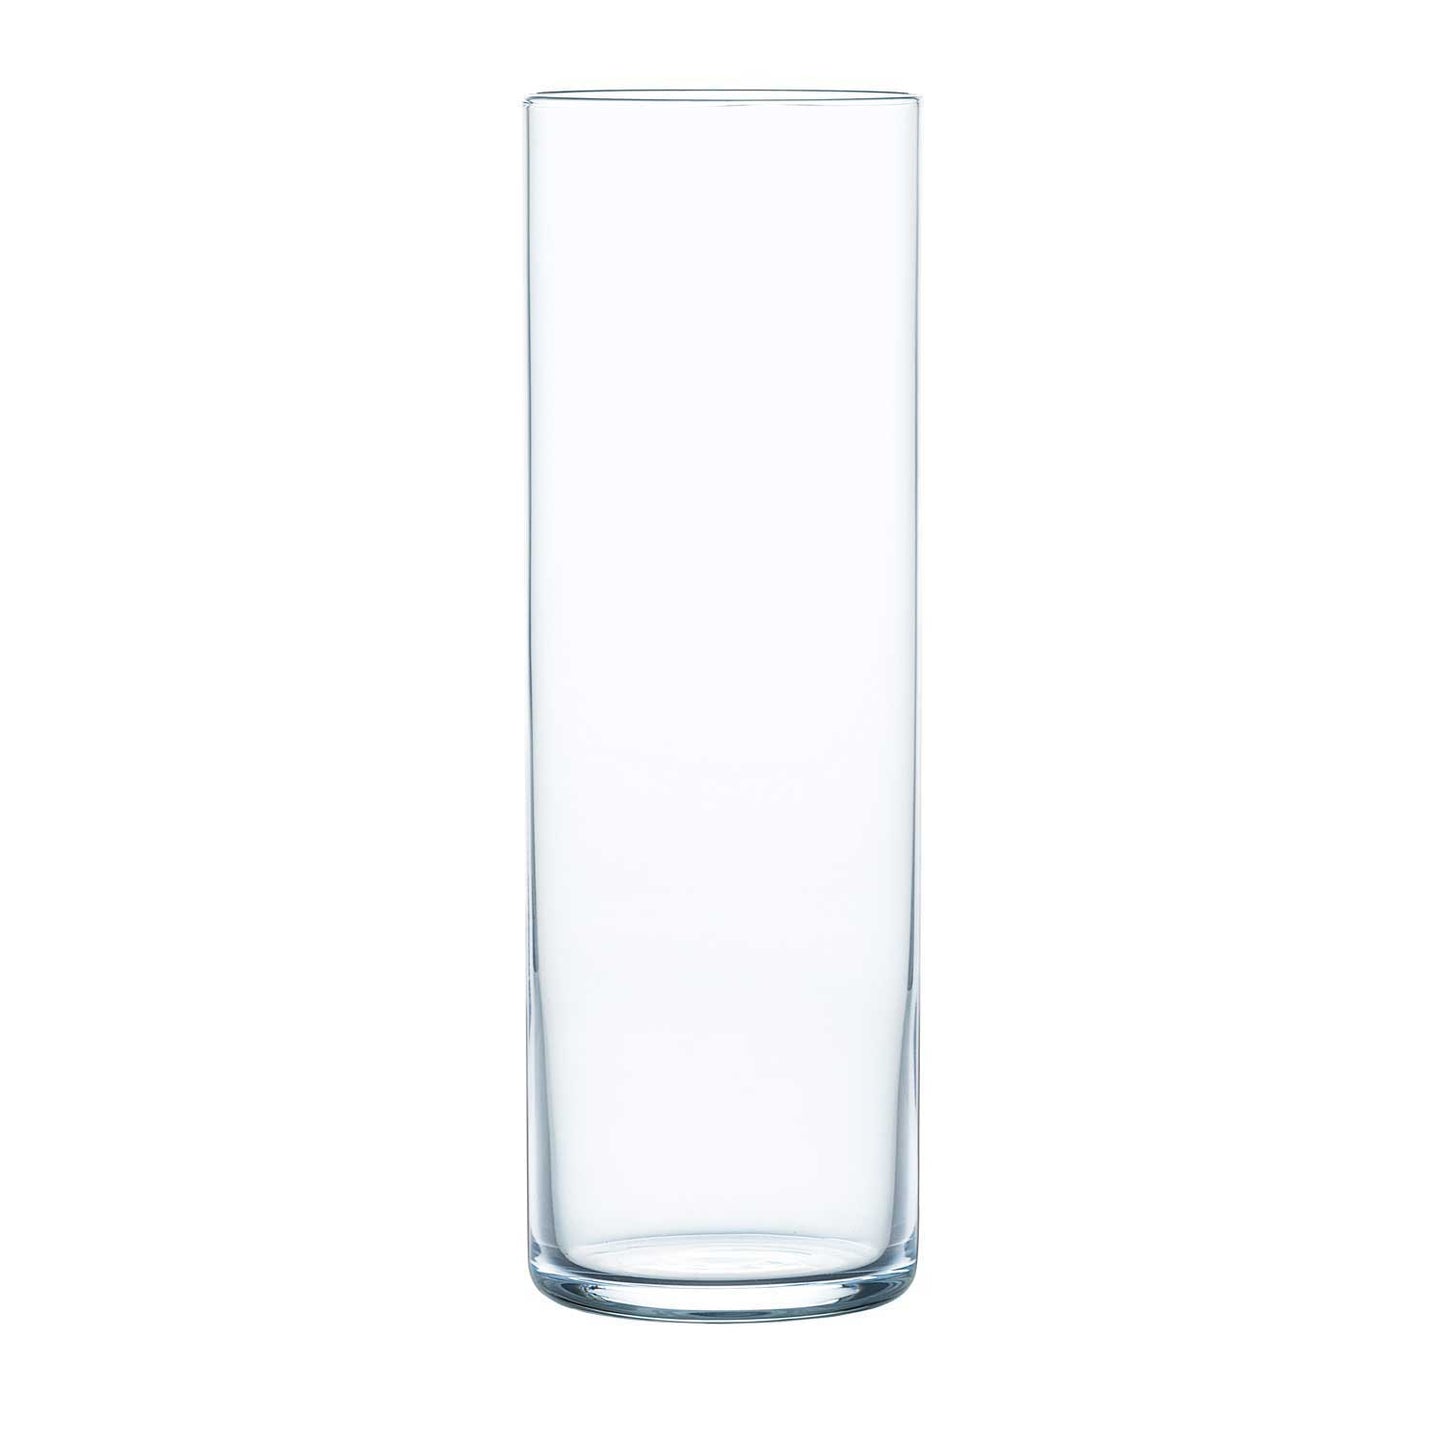 HS Platnium Silkline 300/360ml Collins Glass